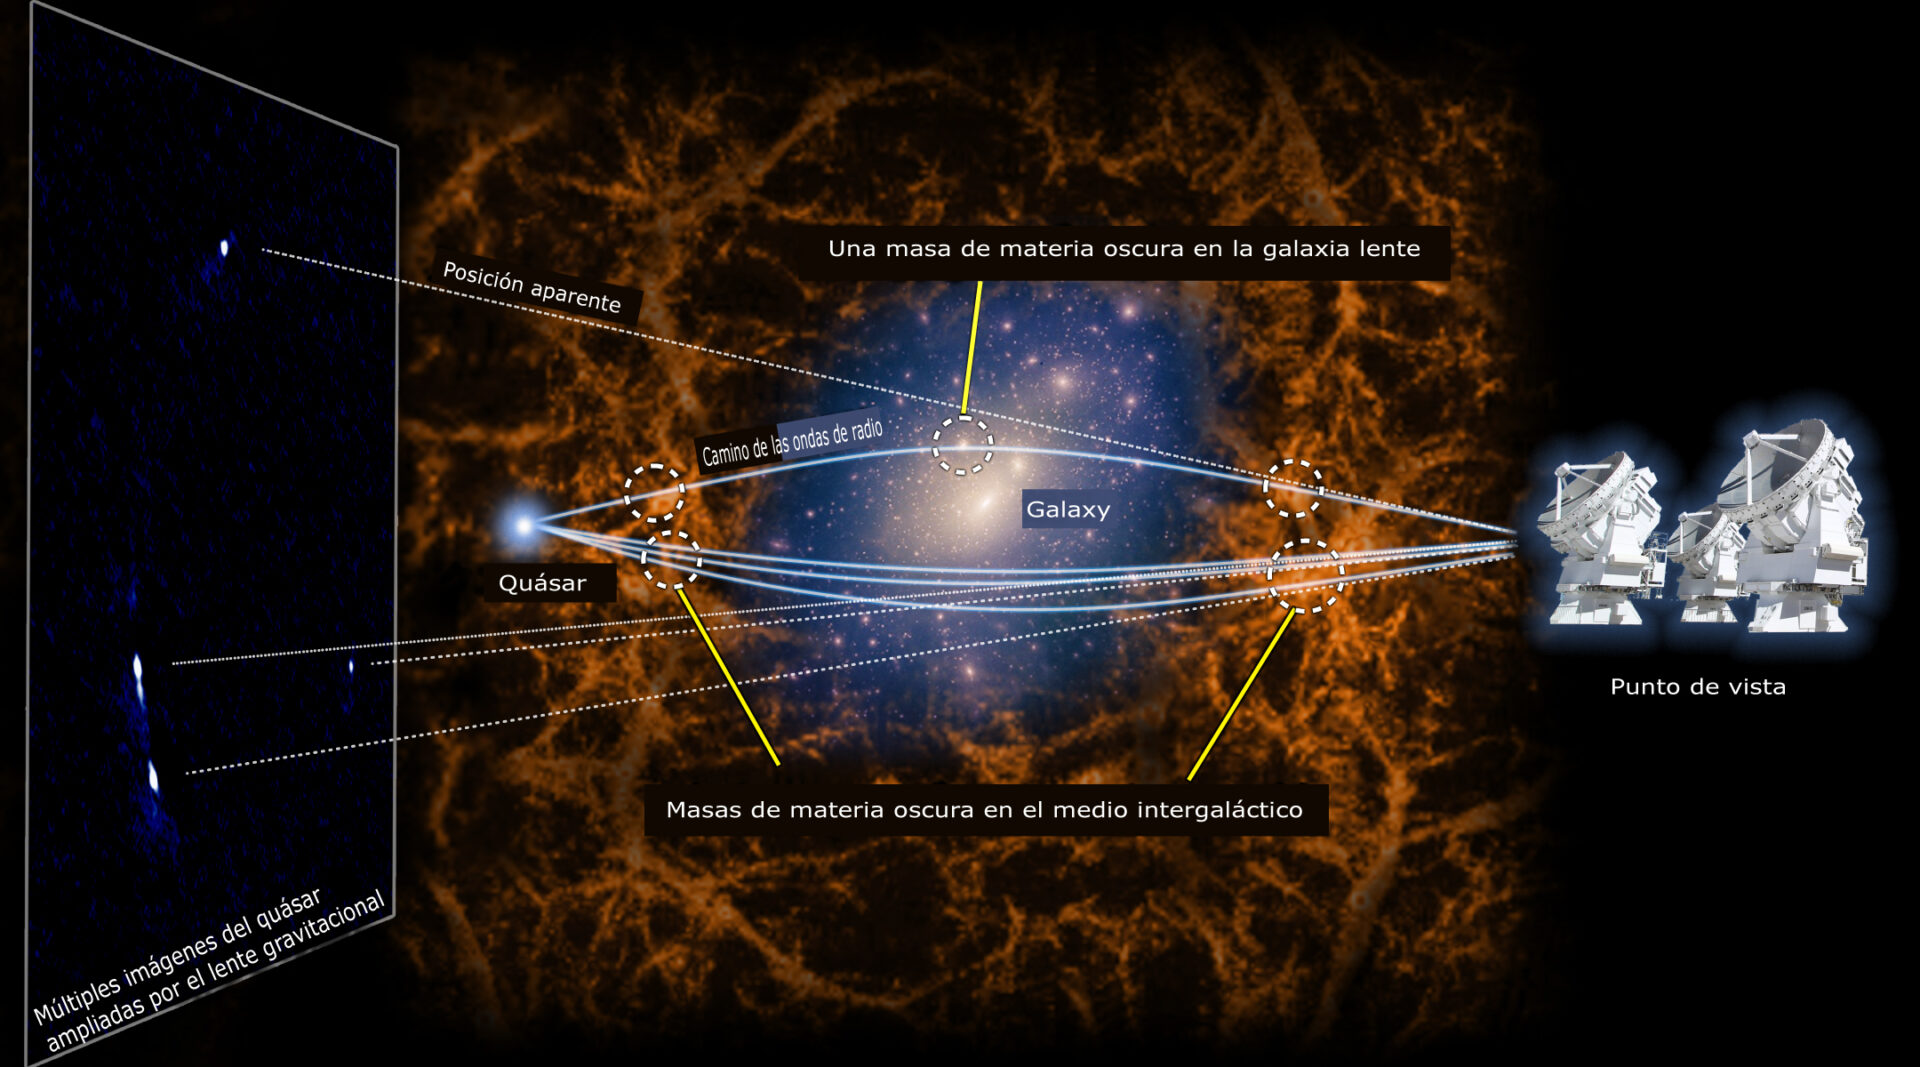 Diagrama conceptual del sistema de lentes gravitacionales MG J0414+0534. El objeto en el centro de la imagen indica la galaxia lente. El color naranja muestra materia oscura en el espacio intergaláctico, y el color amarillo pálido indica materia oscura en la galaxia lente. (Crédito: NAOJ, K.T. Inoue)